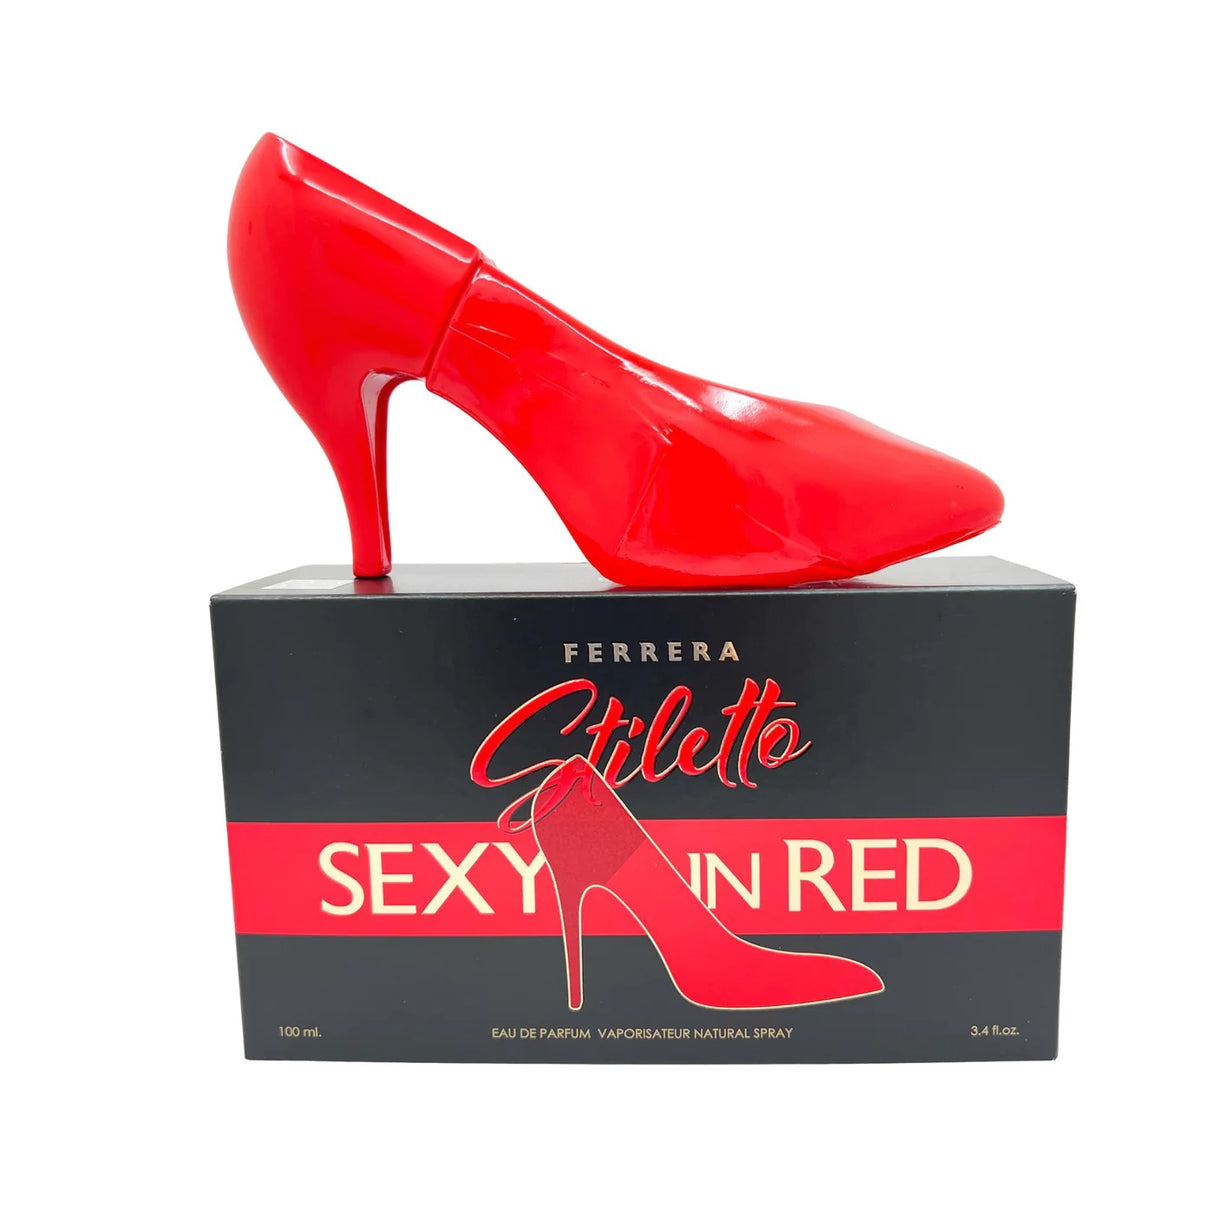 Ferrera Stiletto Sexy in Red, Women's Perfume